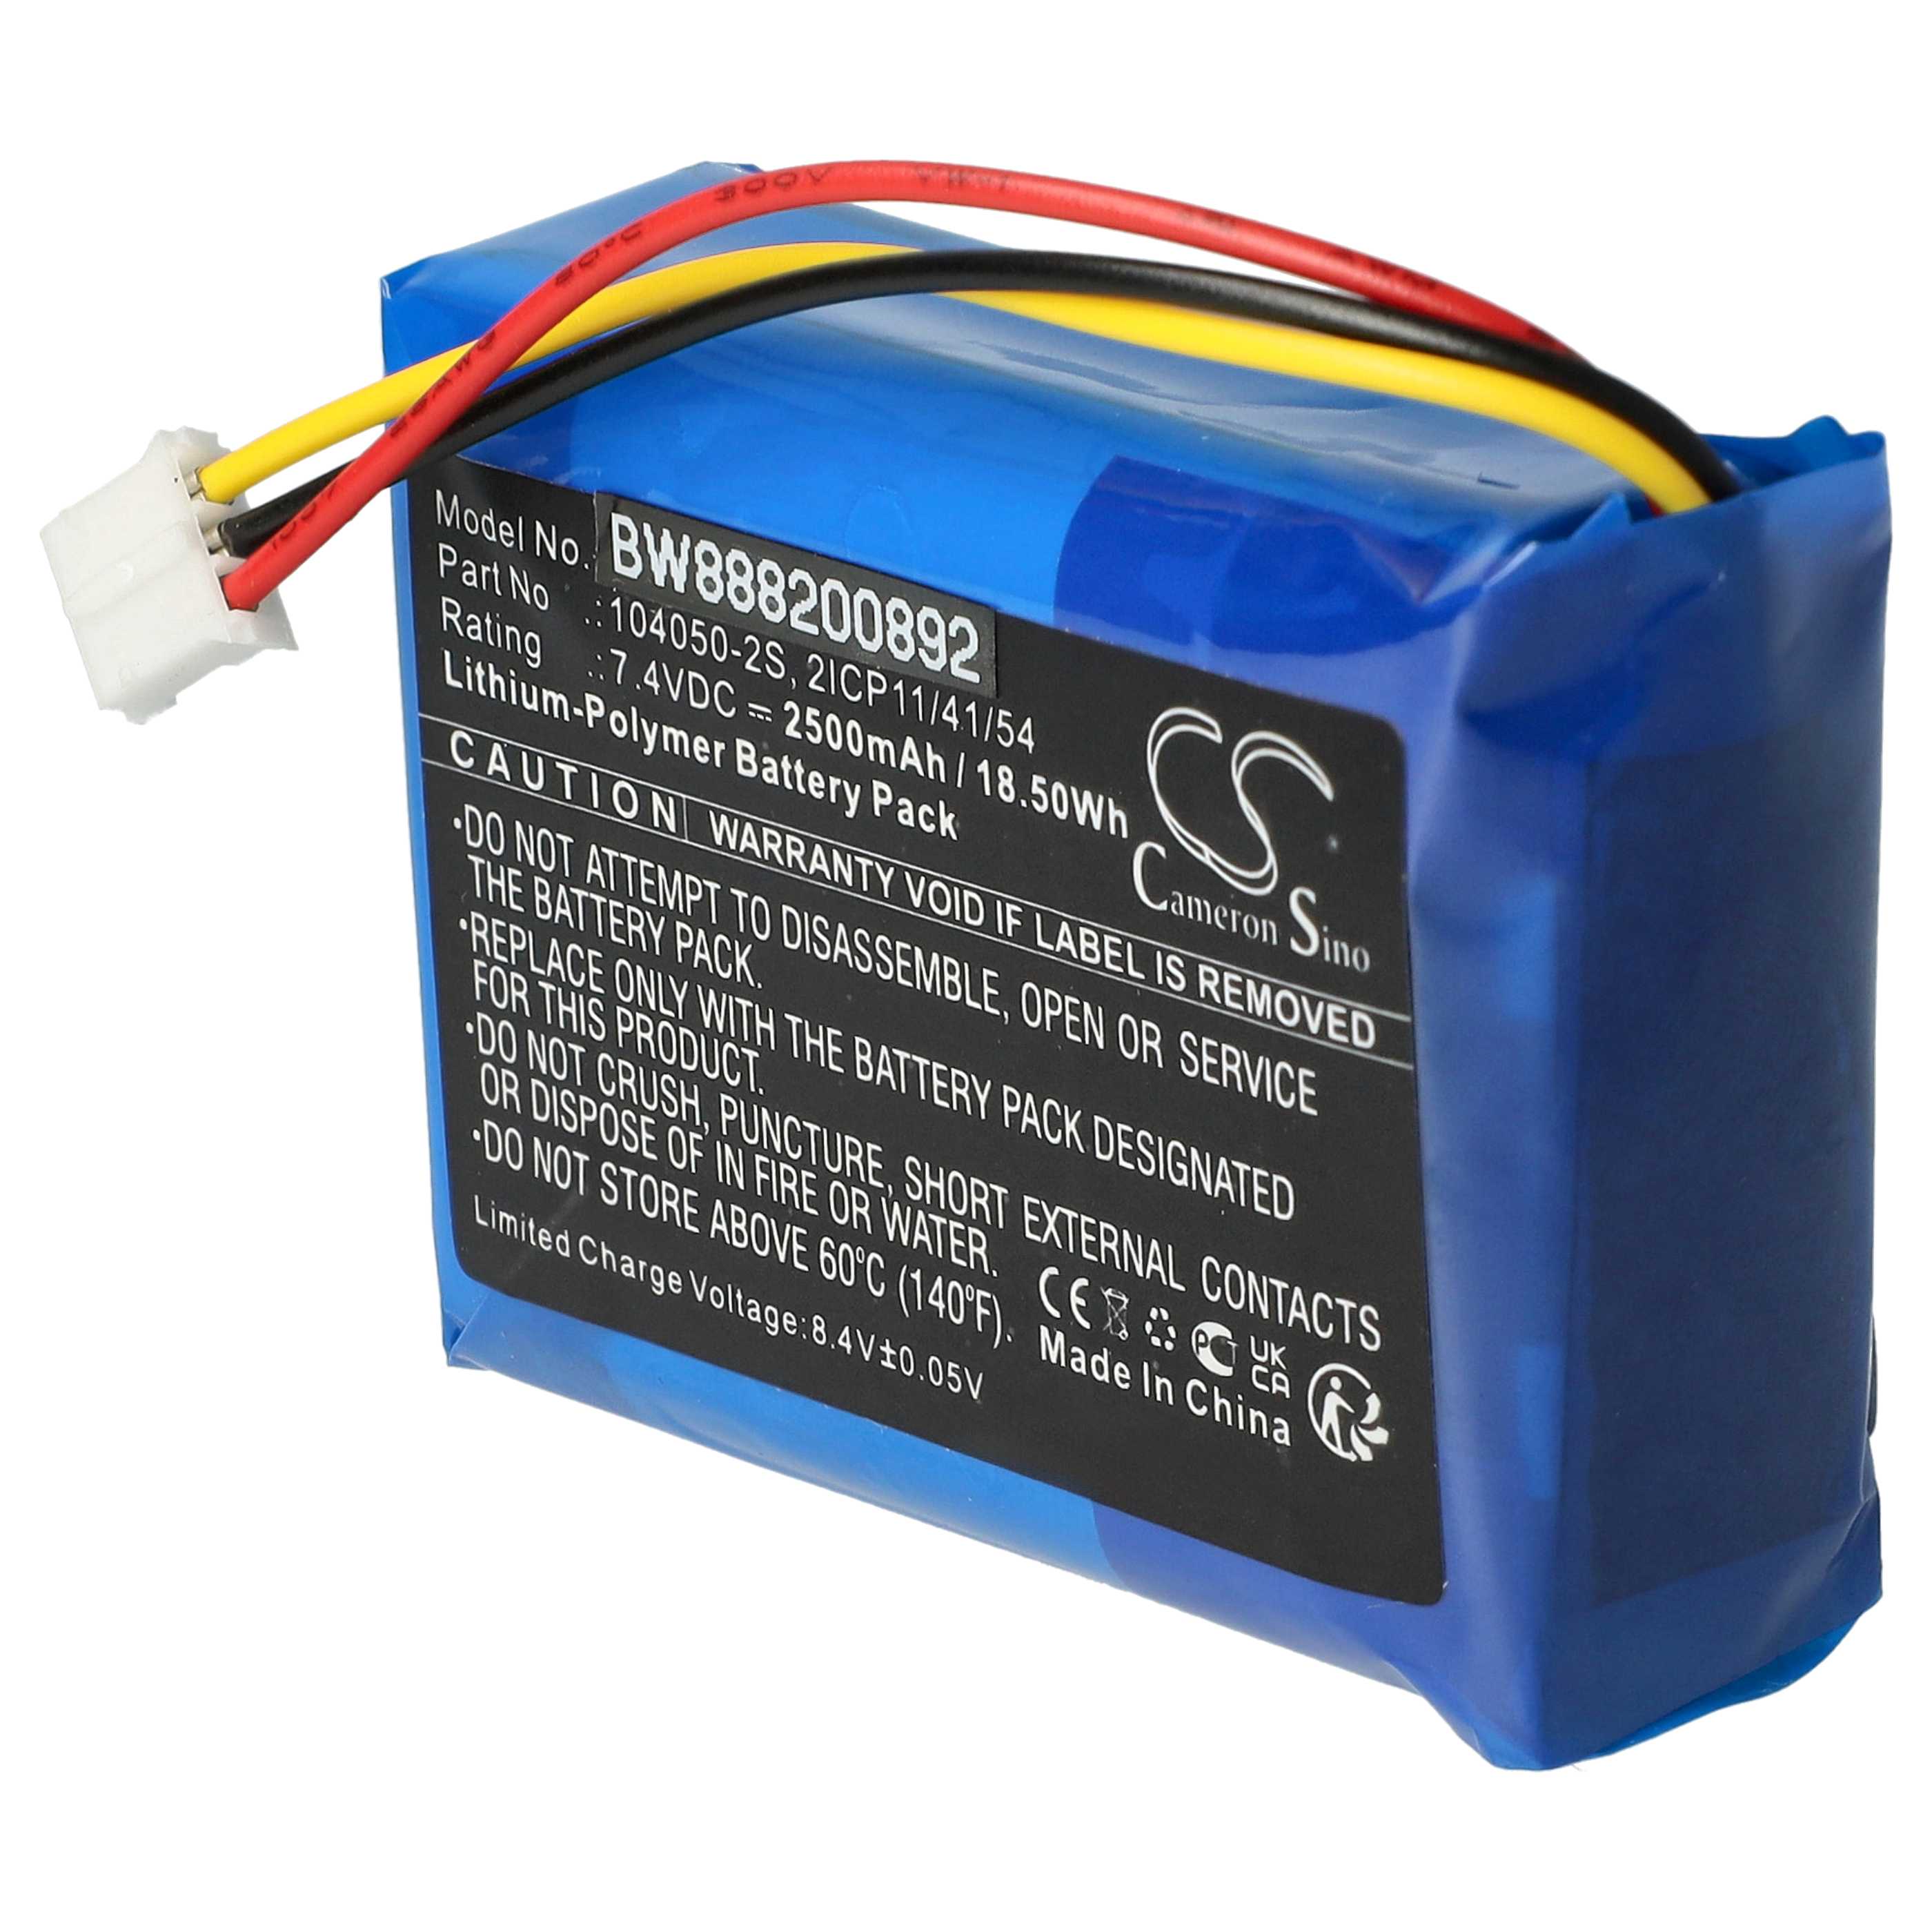 Batterie remplace Philips 104050-2S, 2ICP11/41/54 pour enceinte Philips - 2500mAh 7,4V Li-polymère